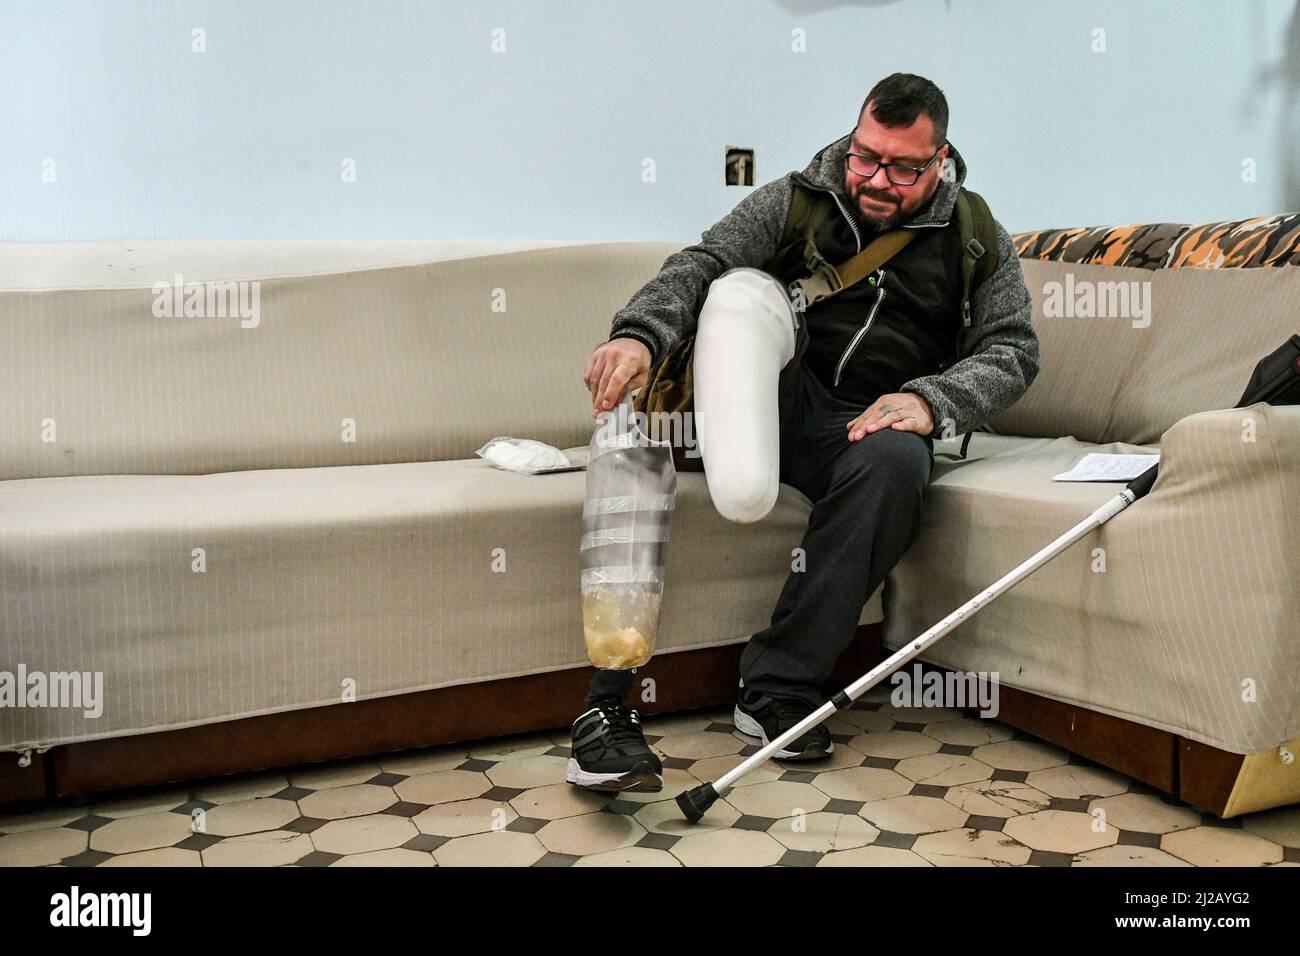 Non Exclusive: ZAPORIZHZHIA, UKRAINE - MARCH 29, 2022 - A patient puts on a prosthetic leg in the corridor at the Zaporizhzhia Military Hospital, Zapo Stock Photo